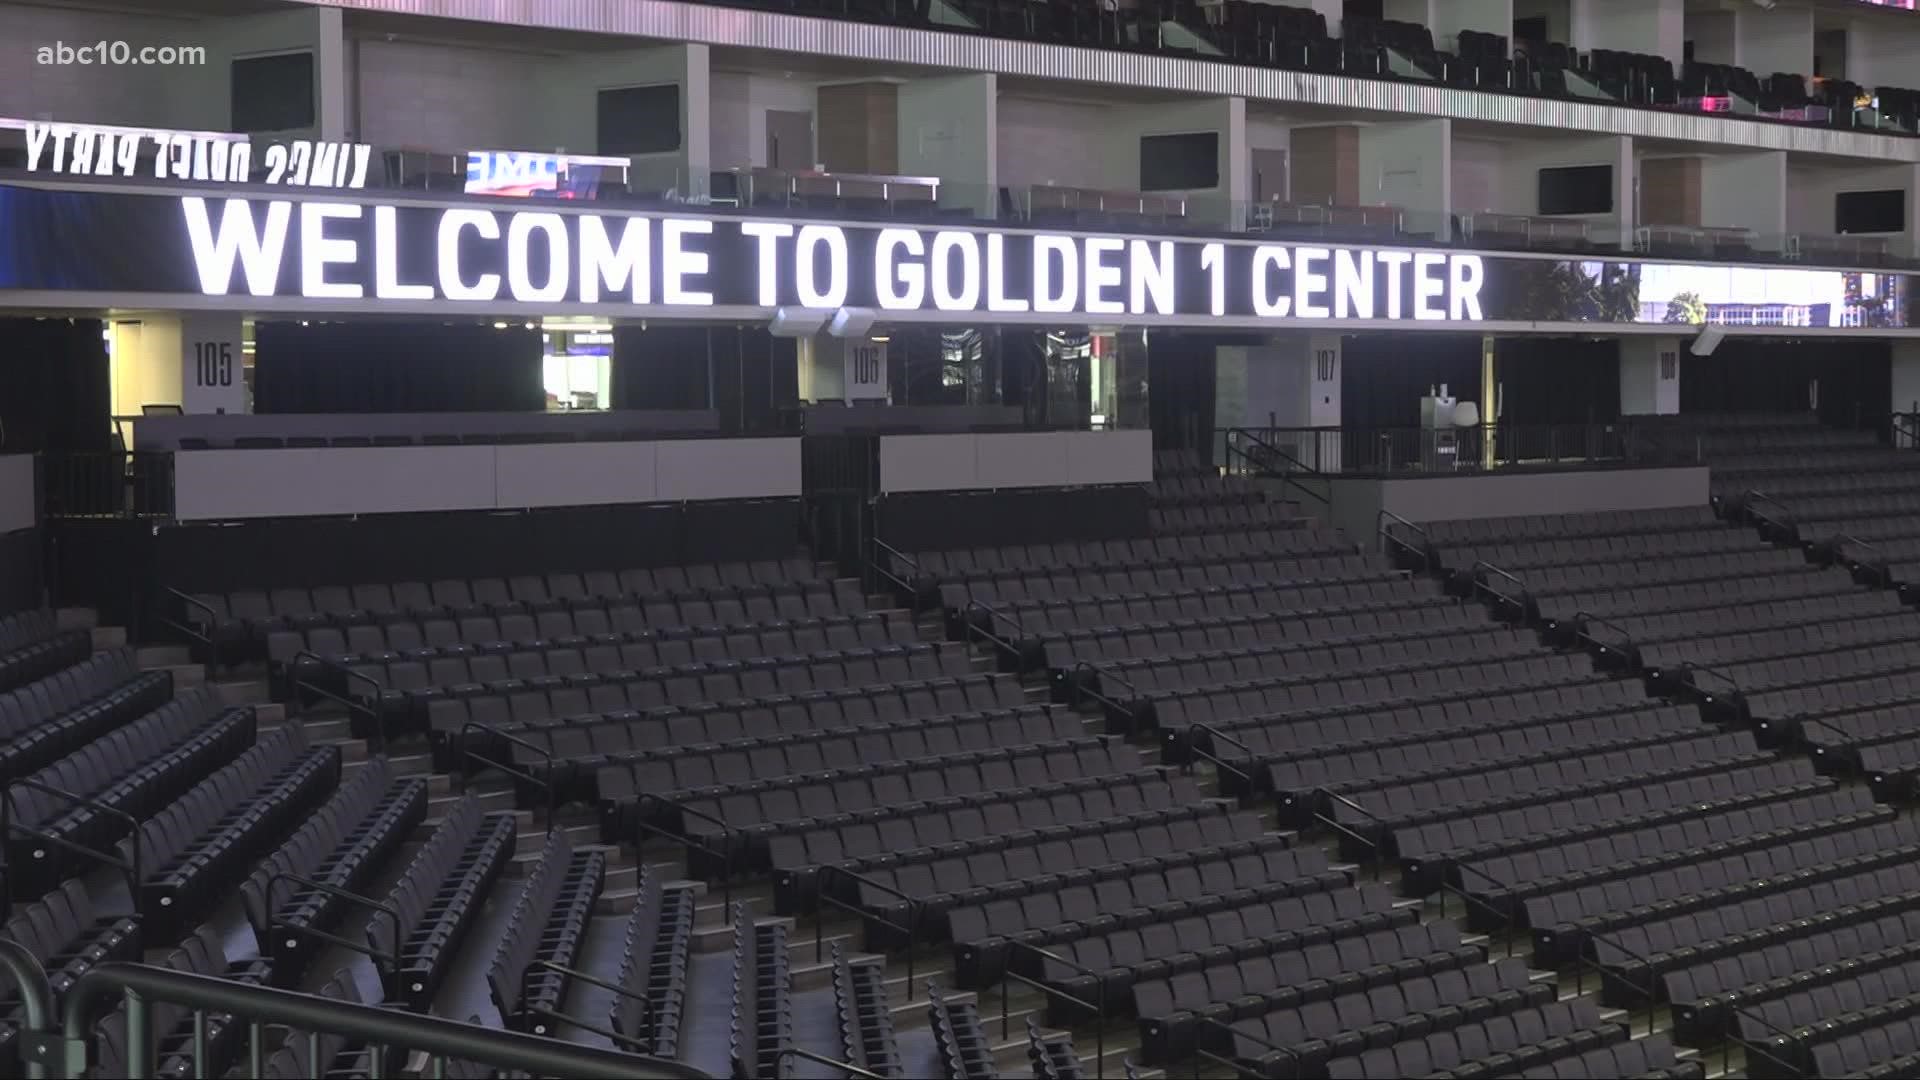 Golden 1 Center